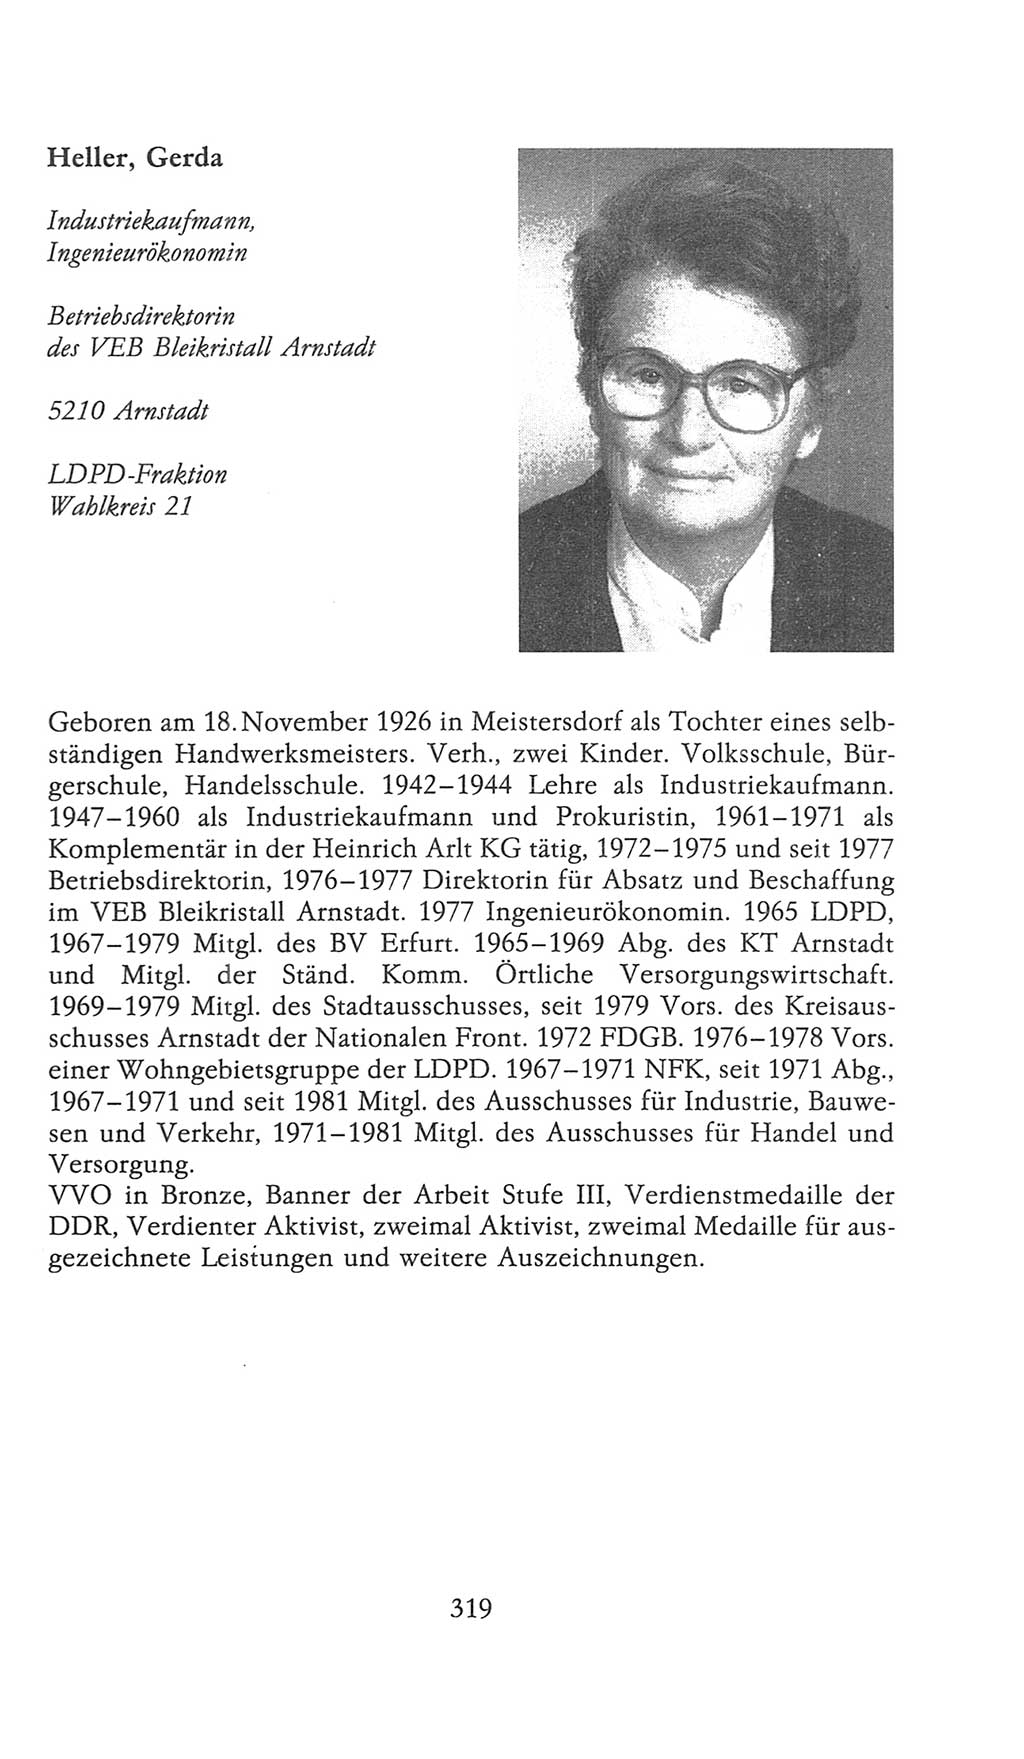 Volkskammer (VK) der Deutschen Demokratischen Republik (DDR), 9. Wahlperiode 1986-1990, Seite 319 (VK. DDR 9. WP. 1986-1990, S. 319)